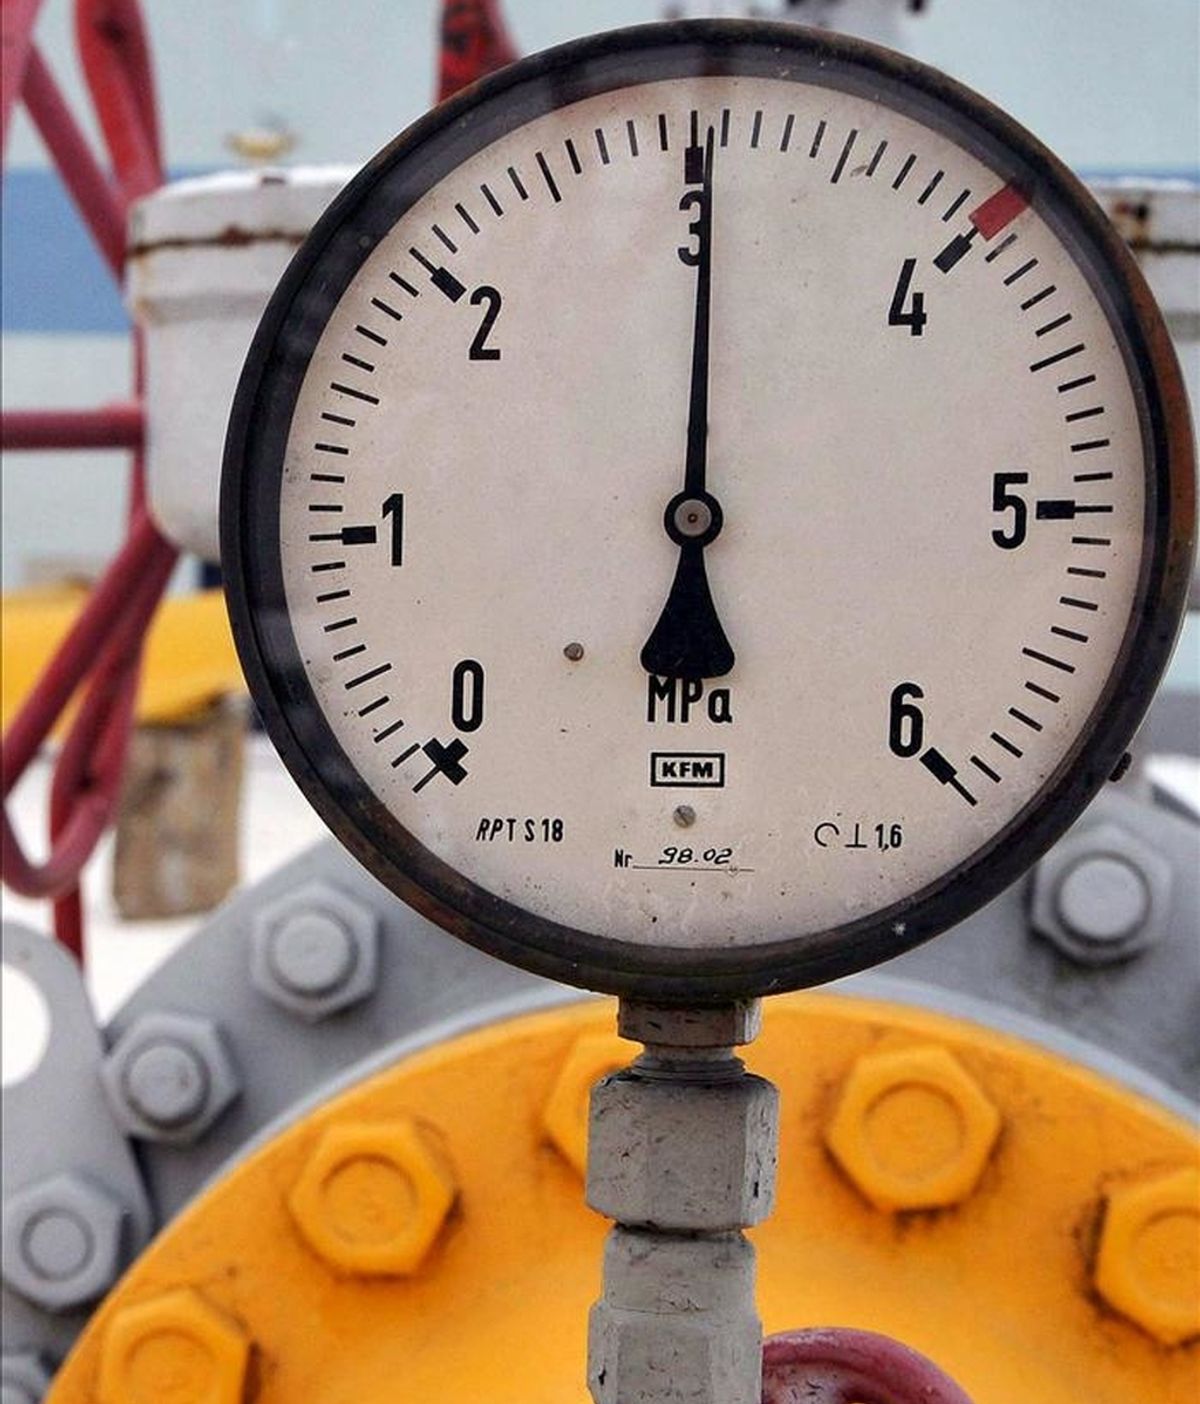 El grupo francés GDF Suez anunció hoy la firma de un contrato para la venta de 2,5 millones de toneladas de gas licuado a la malasia Petronas. Estación de destribución y medición de gas. EFE/Archivo